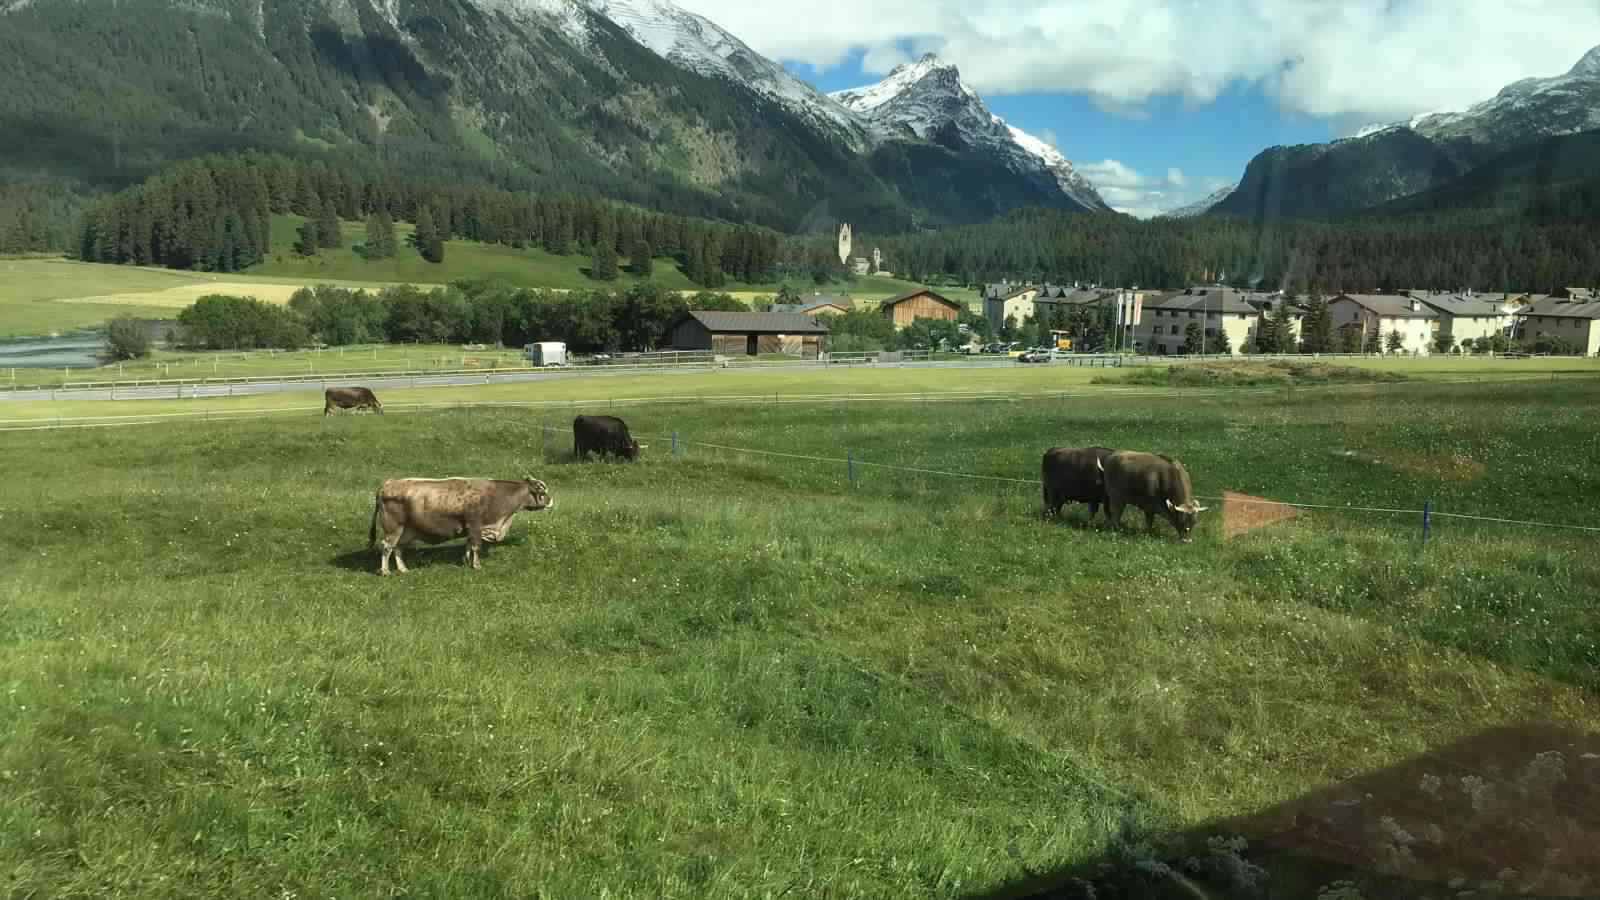 "بالصور" جولة مع قطار جلاسير إكسبريس عبر جبال اﻷلب السويسرية 30